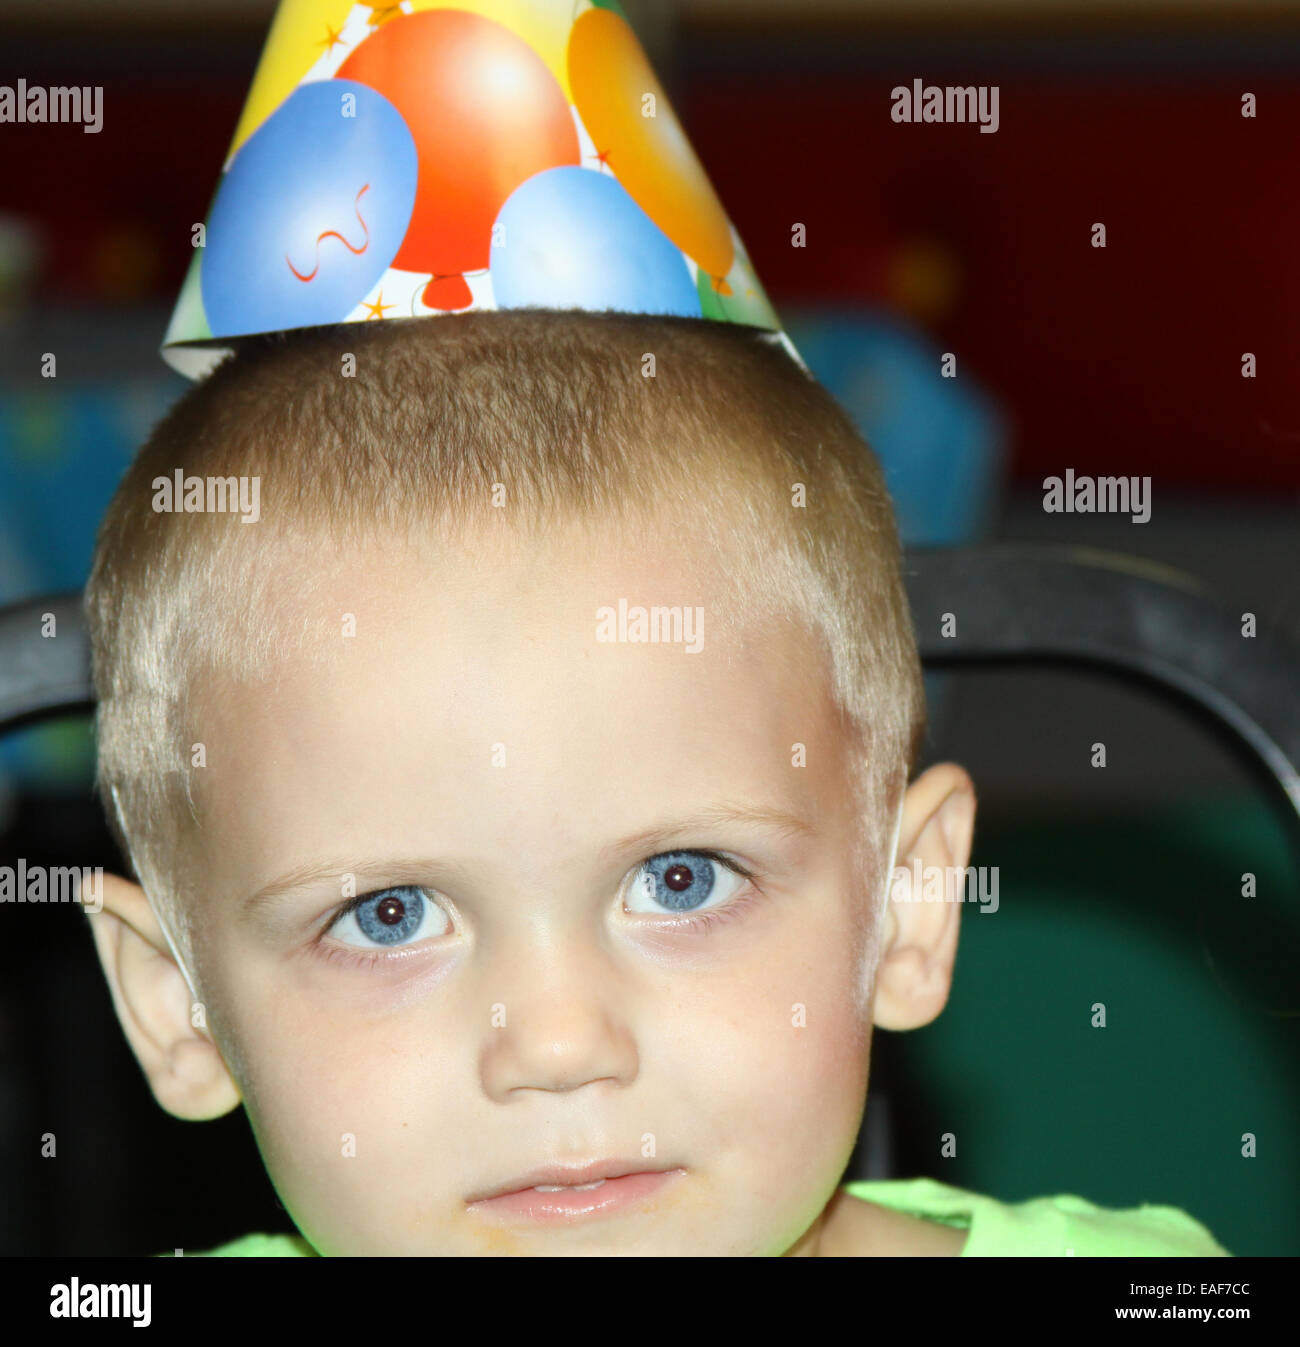 Compleanno ragazzo con gli occhi blu Foto Stock